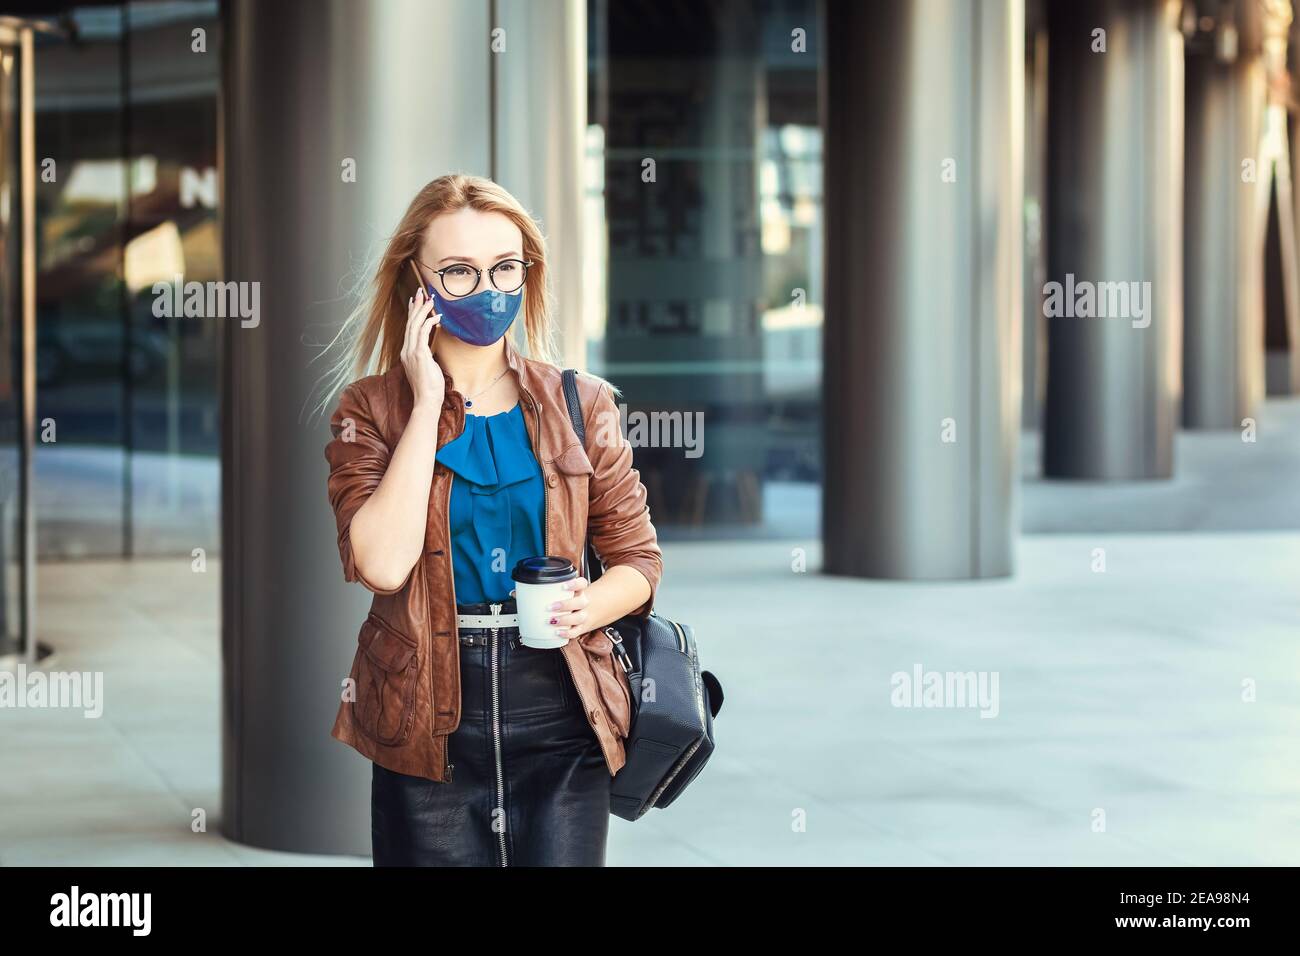 Femme portant un masque facial parlant au téléphone à l'extérieur pendant les déplacements Banque D'Images